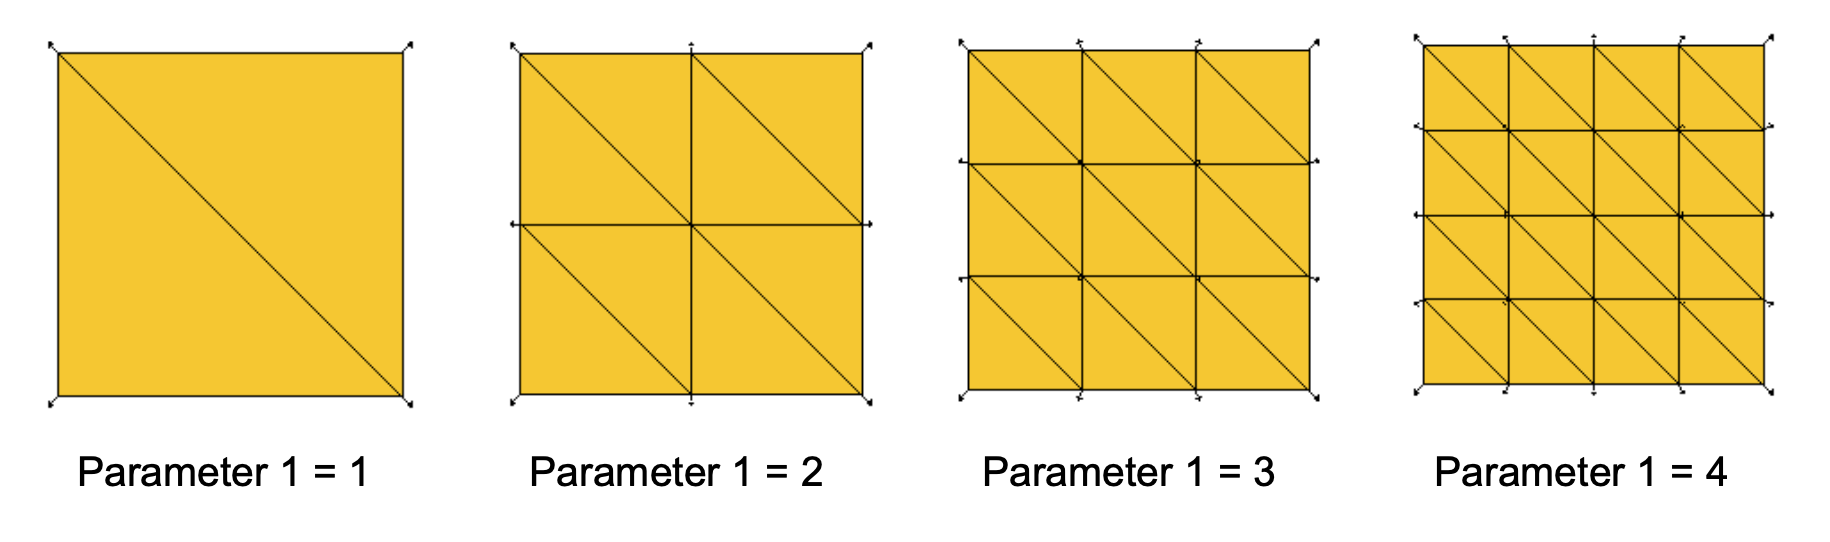 tile parameters